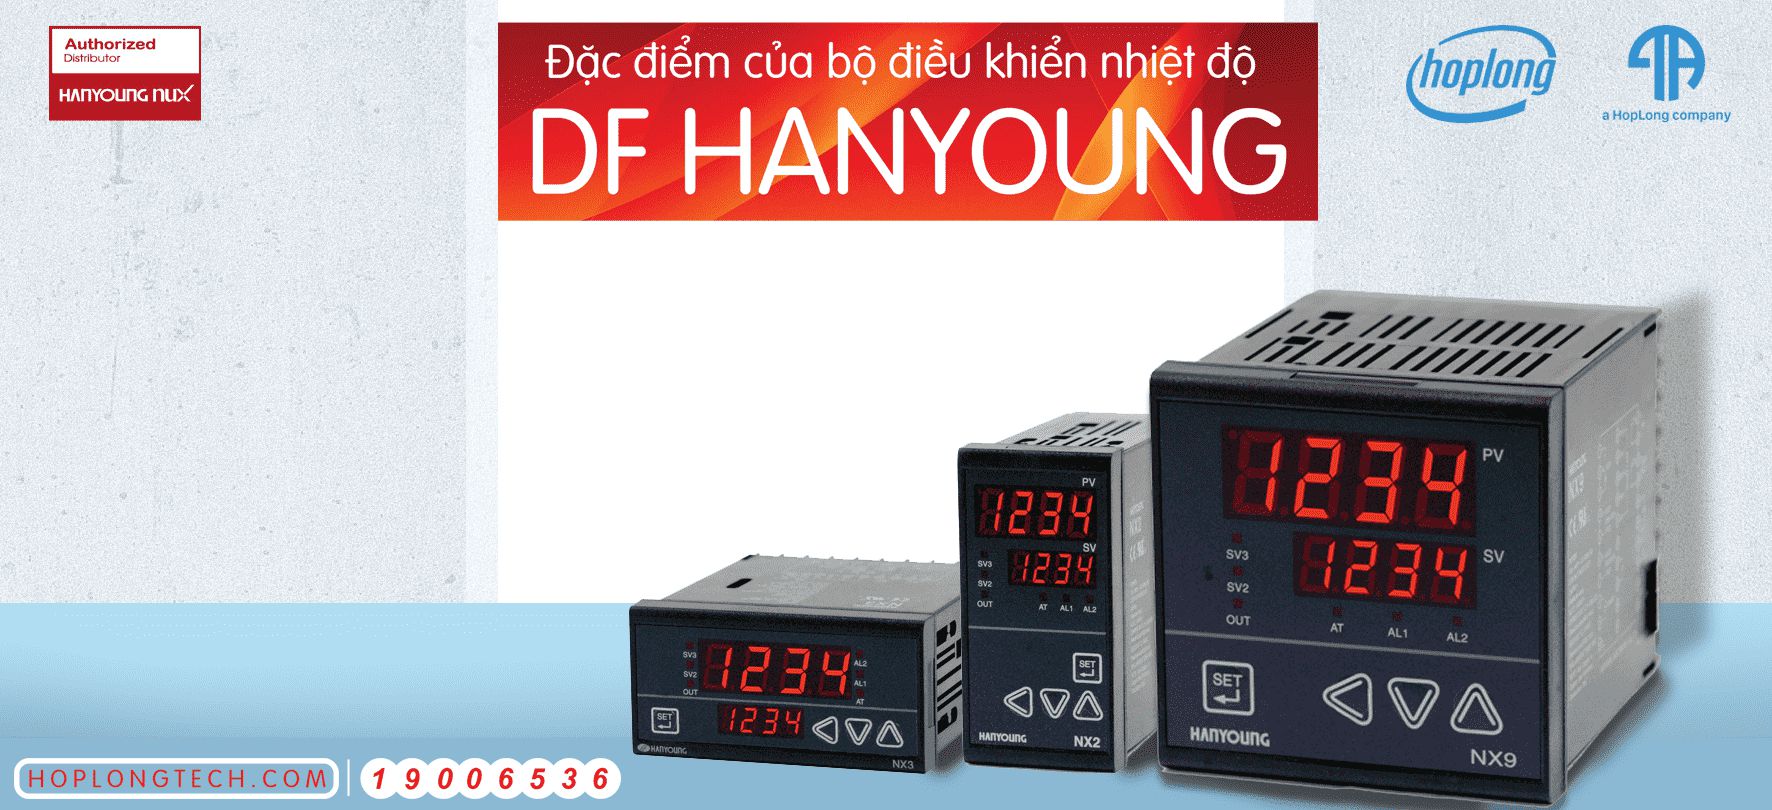 Đặc điểm của bộ điều khiển nhiệt độ DF Hanyoung